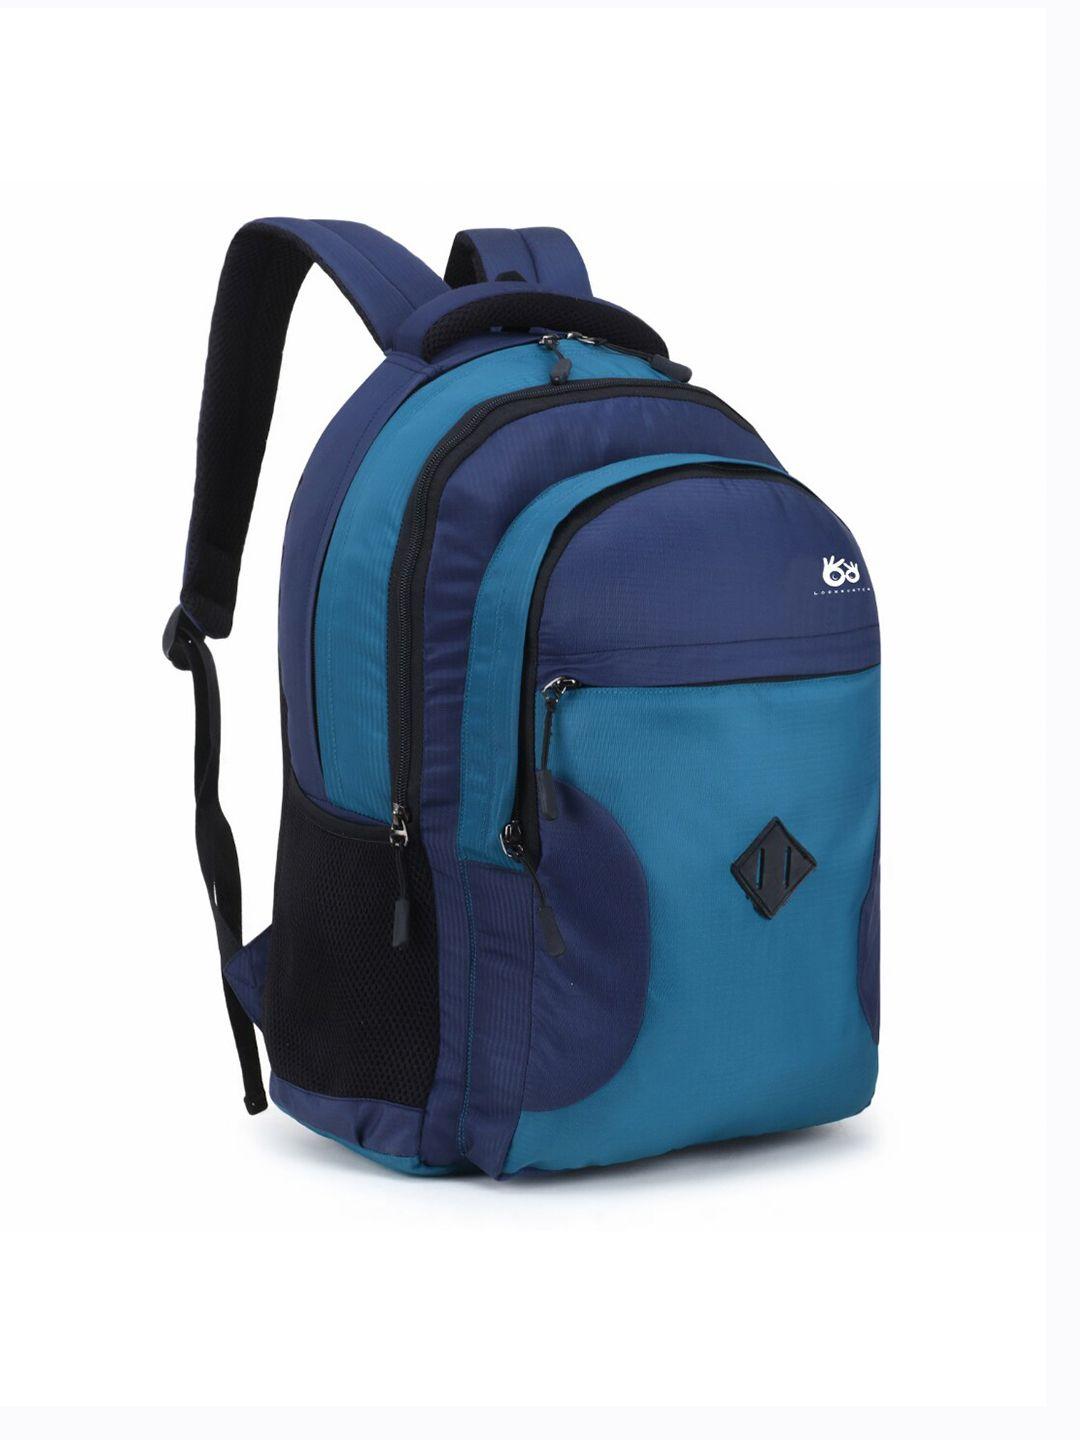 lookmuster unisex green & blue waterproof laptop backpack